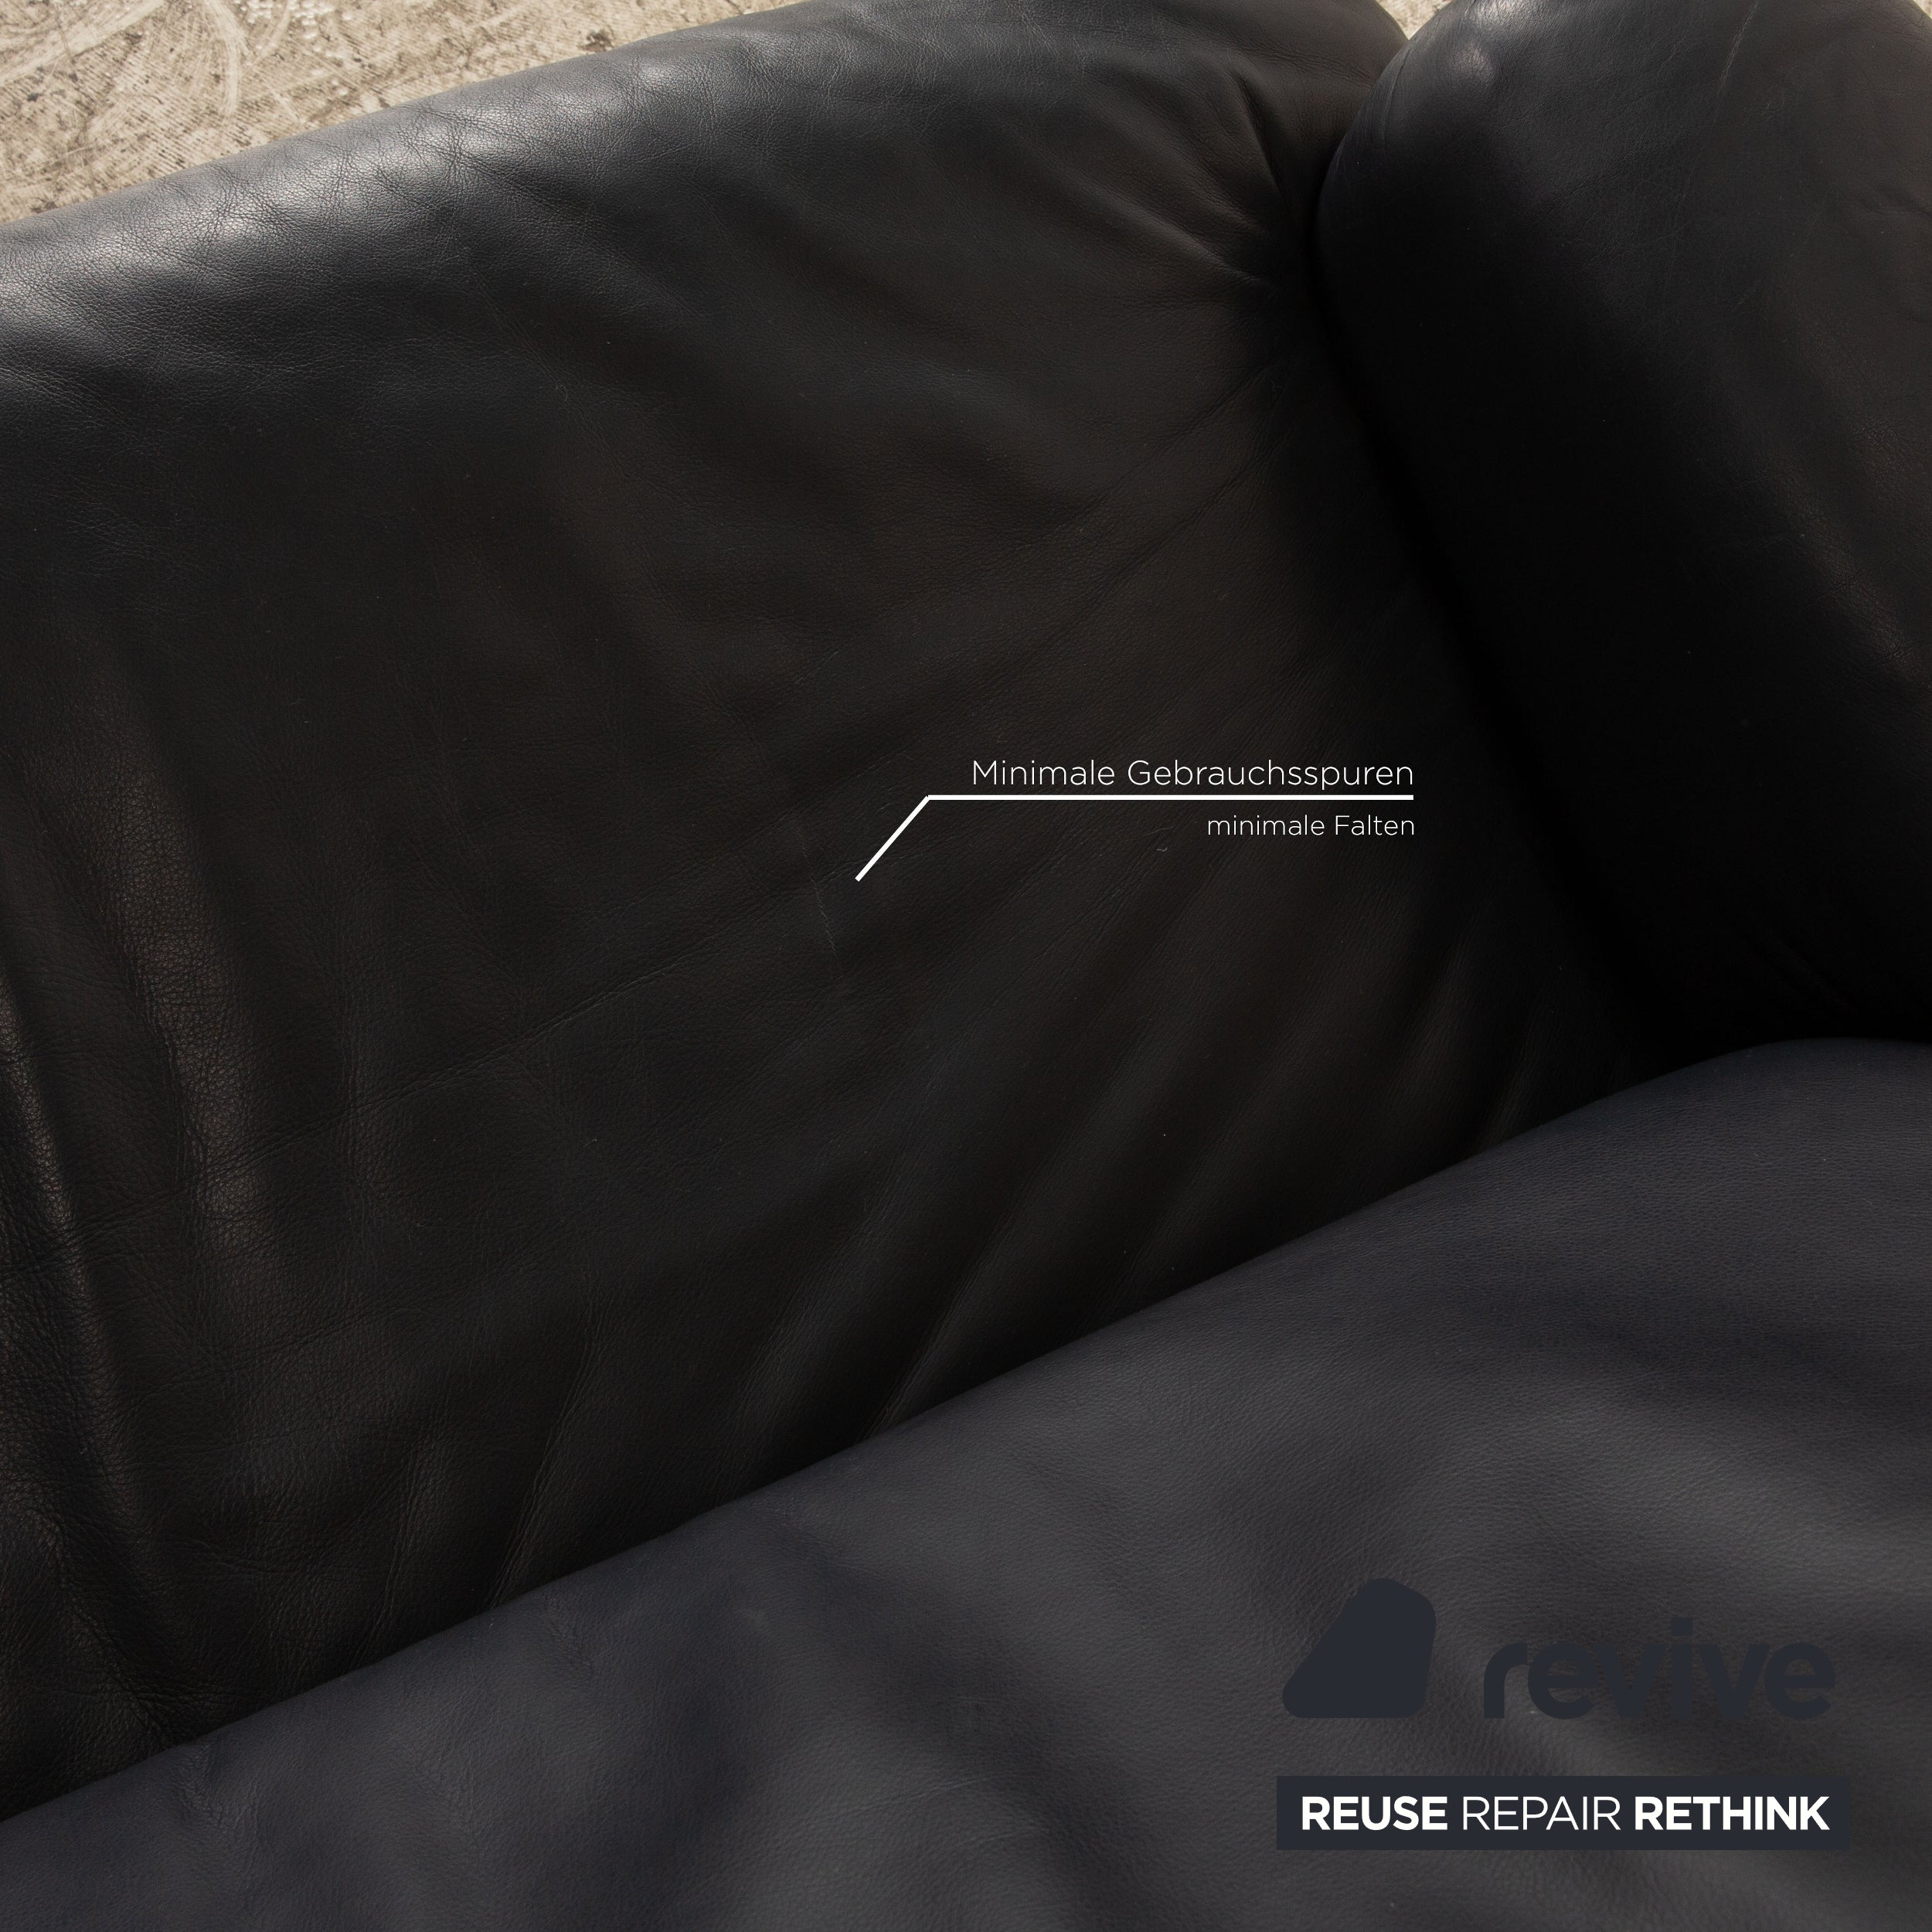 de Sede DS 81 Leder Zweisitzer Grau Blau Sofa Couch